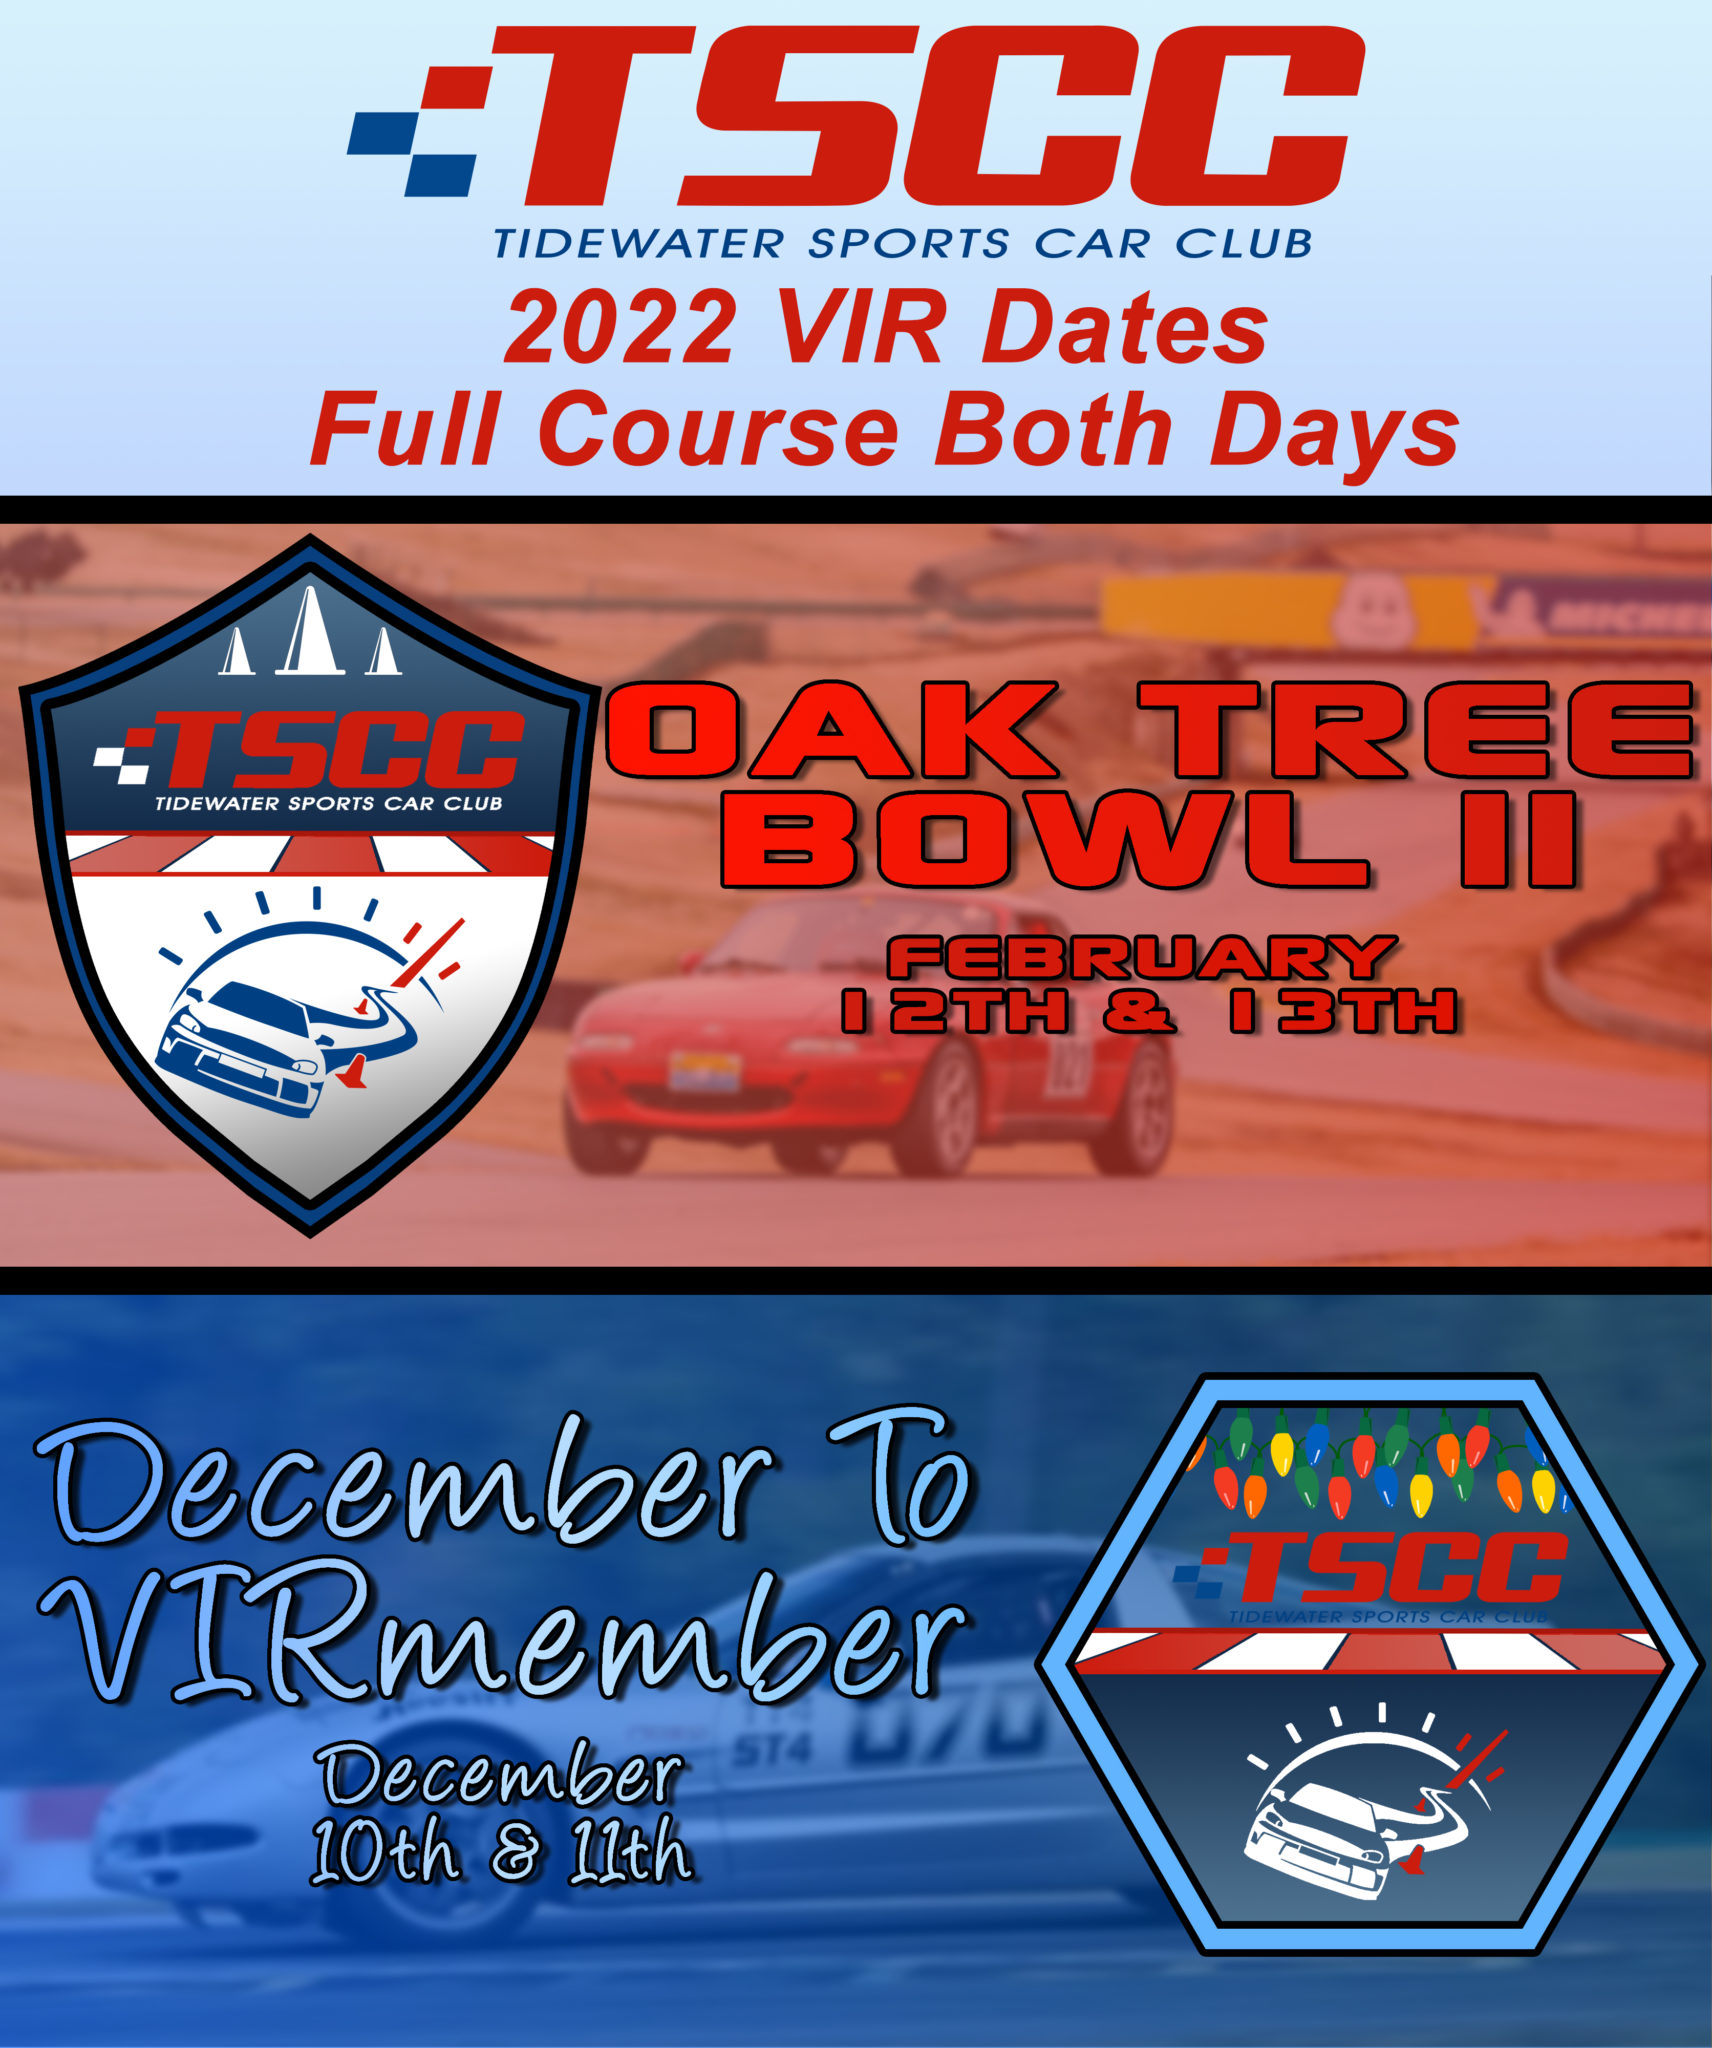 2022 VIR Dates Tidewater Sports Car Club